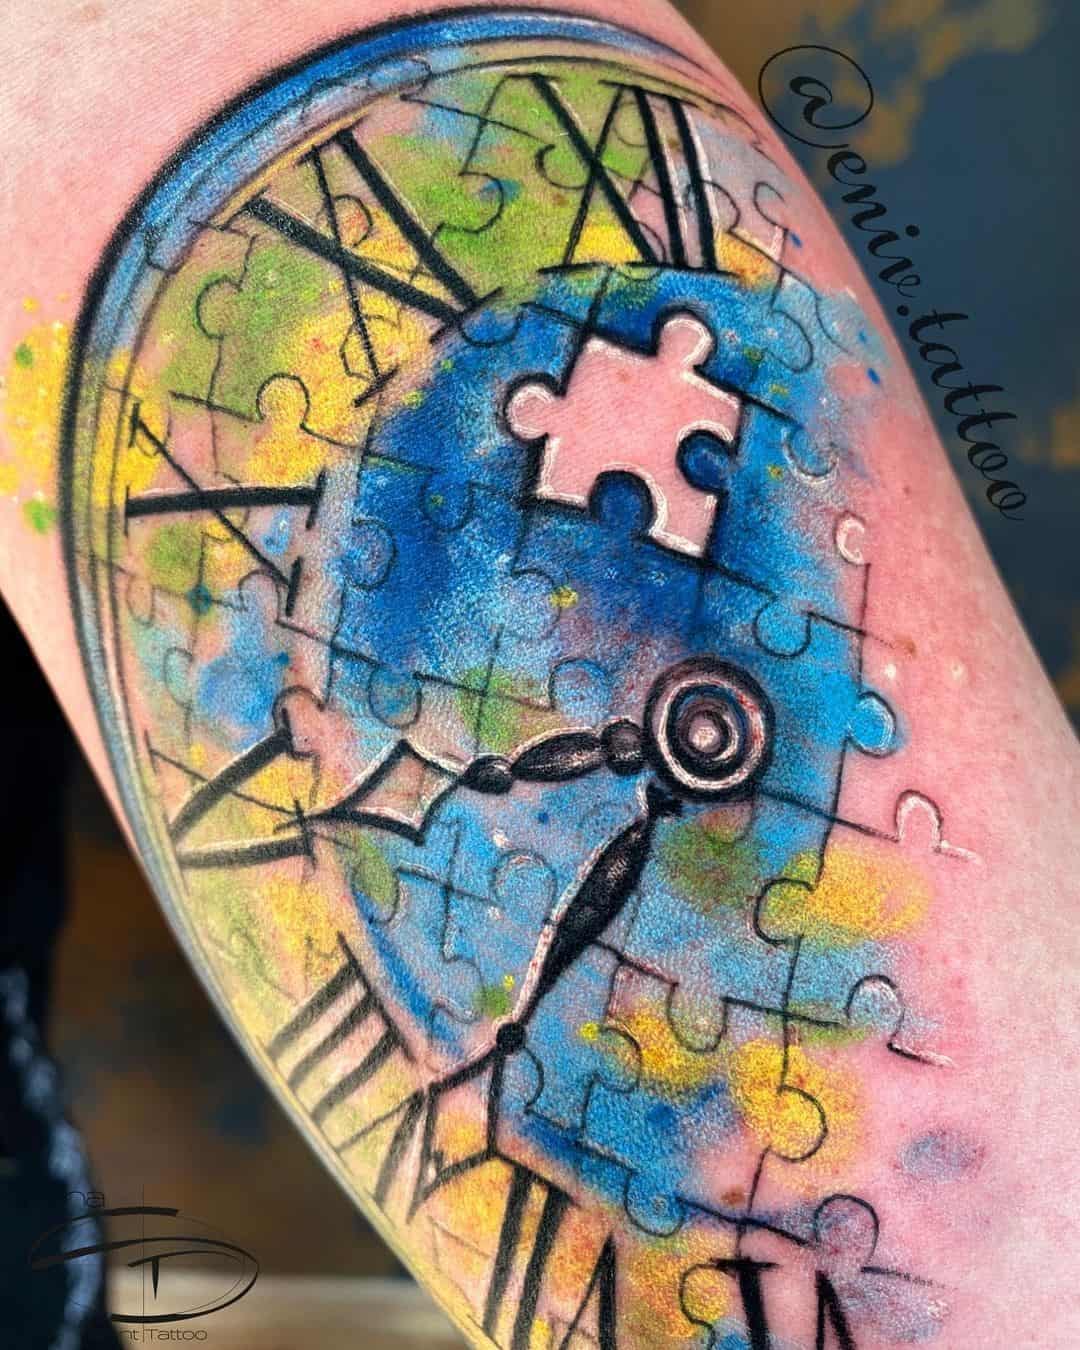 Clock & Missing Puzzle Piece Autism Tattoo Idea